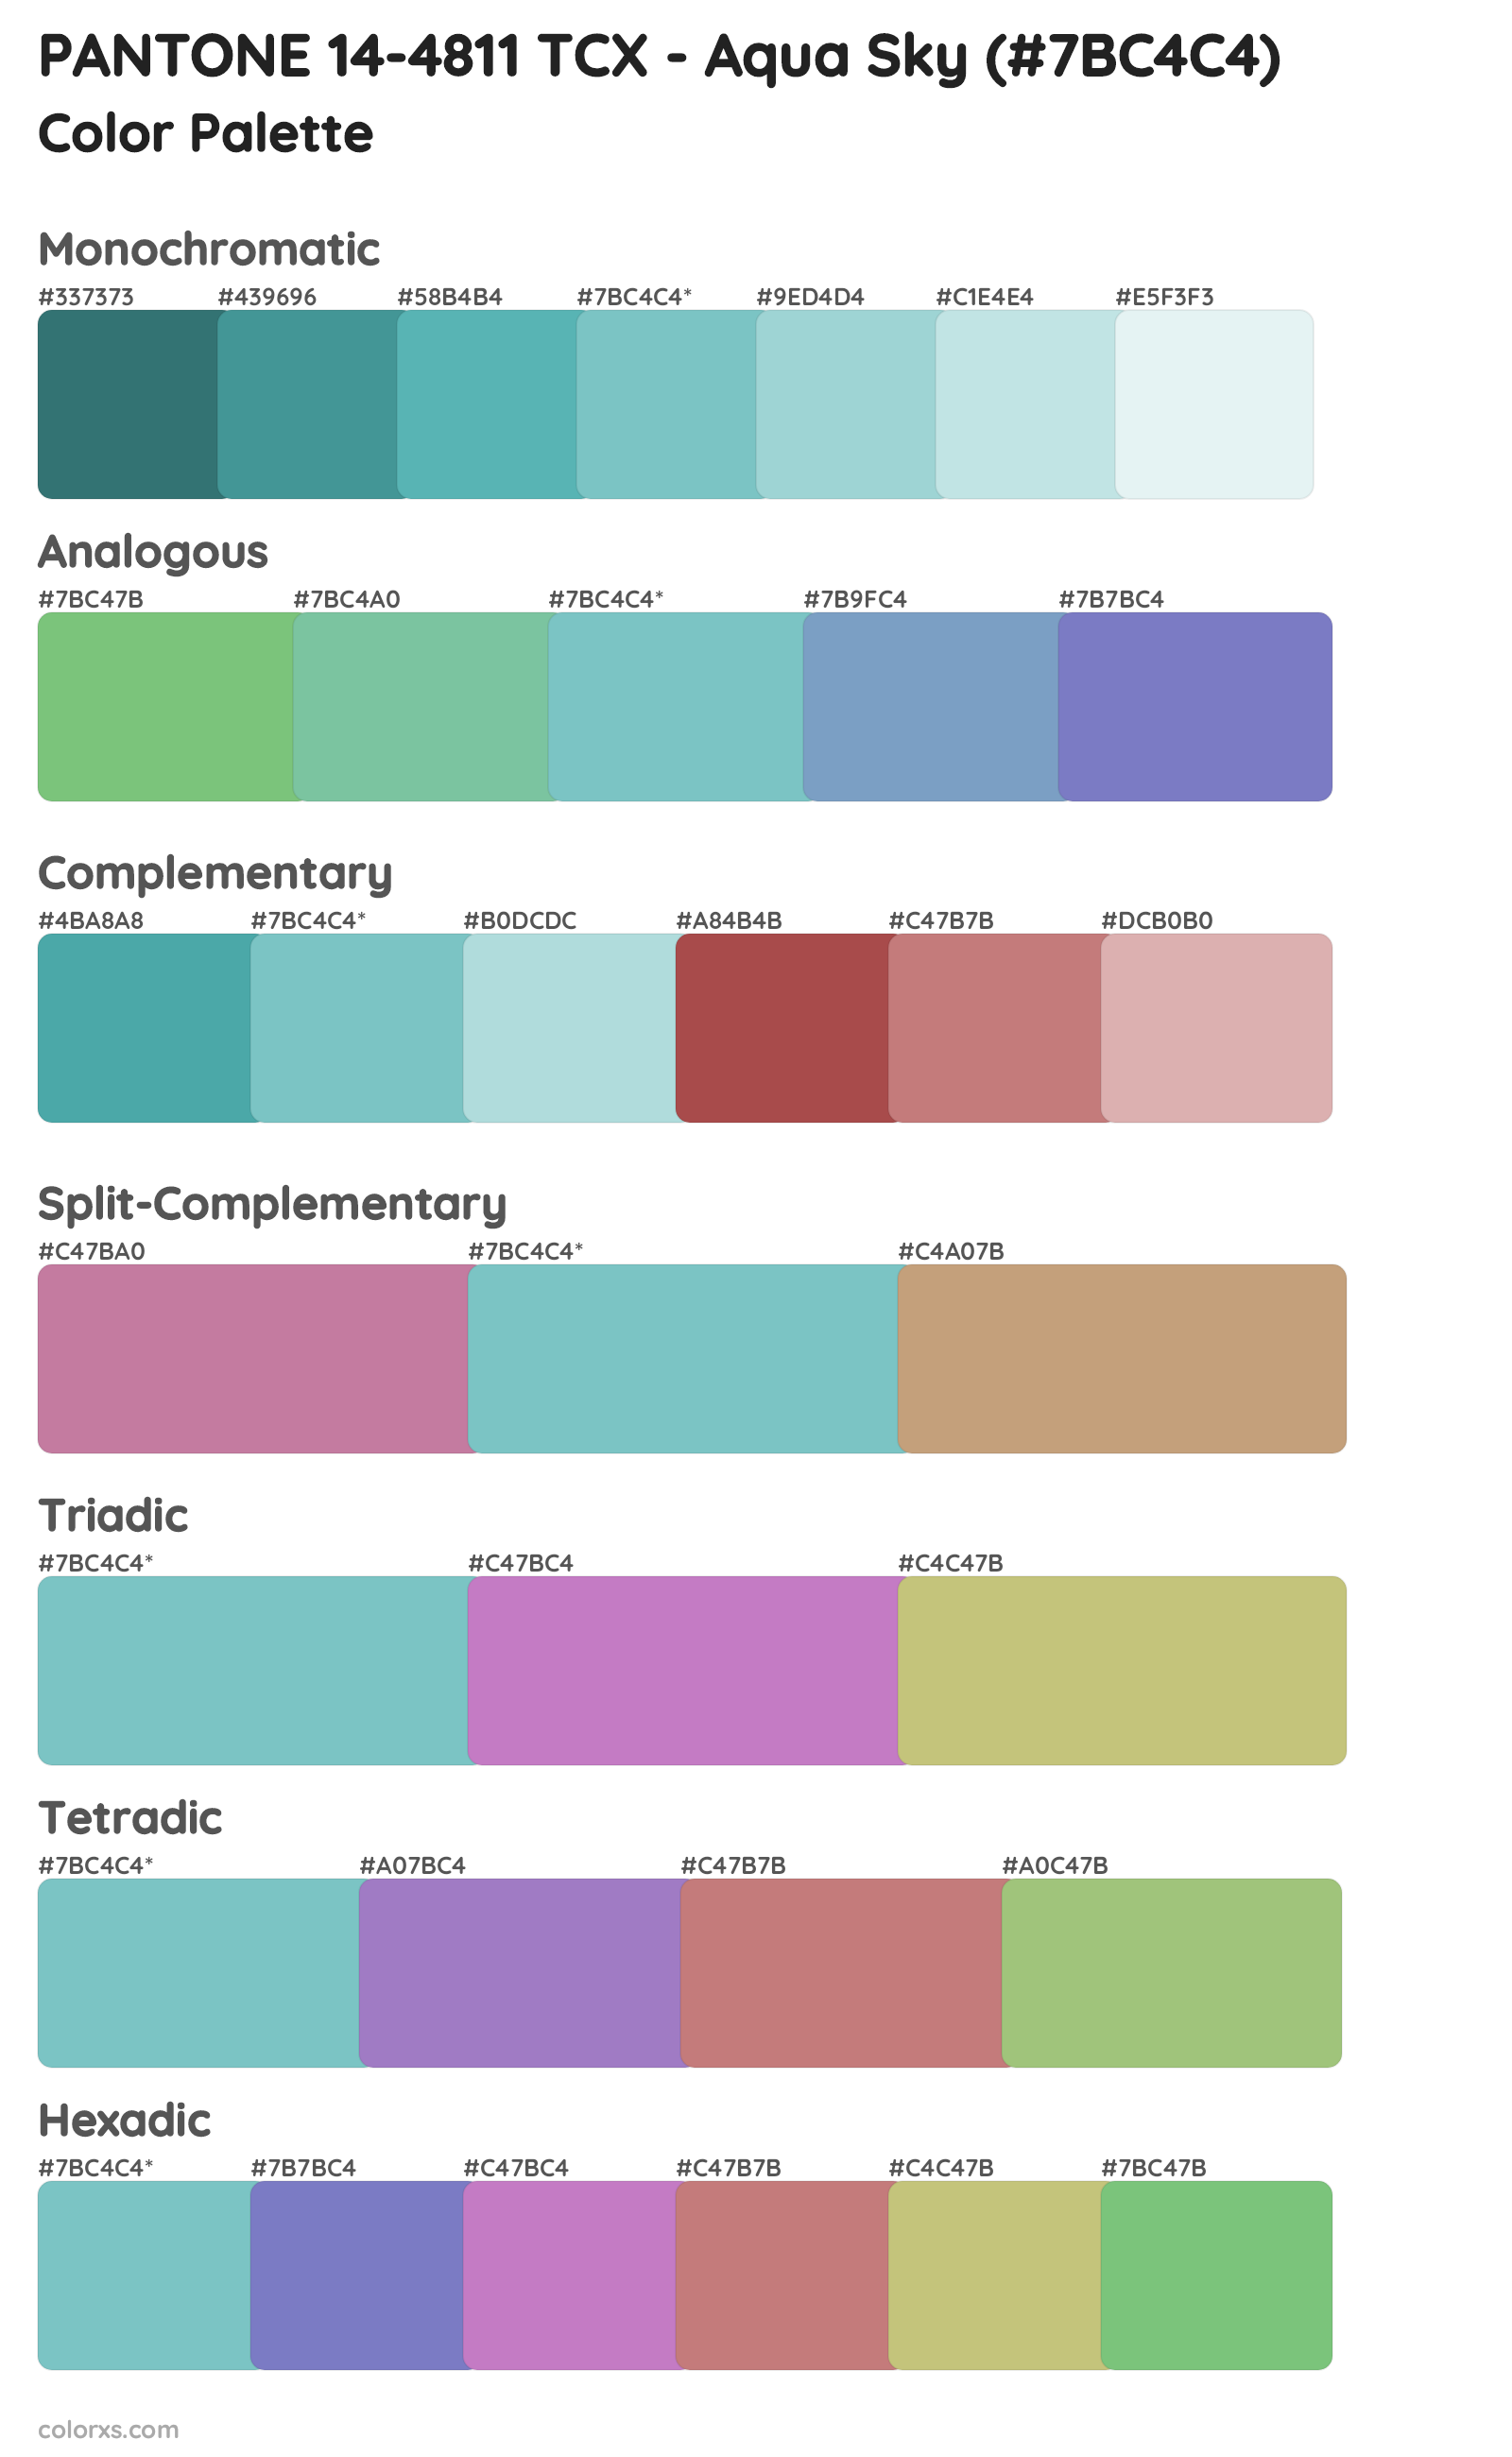 PANTONE 14-4811 TCX - Aqua Sky Color Scheme Palettes